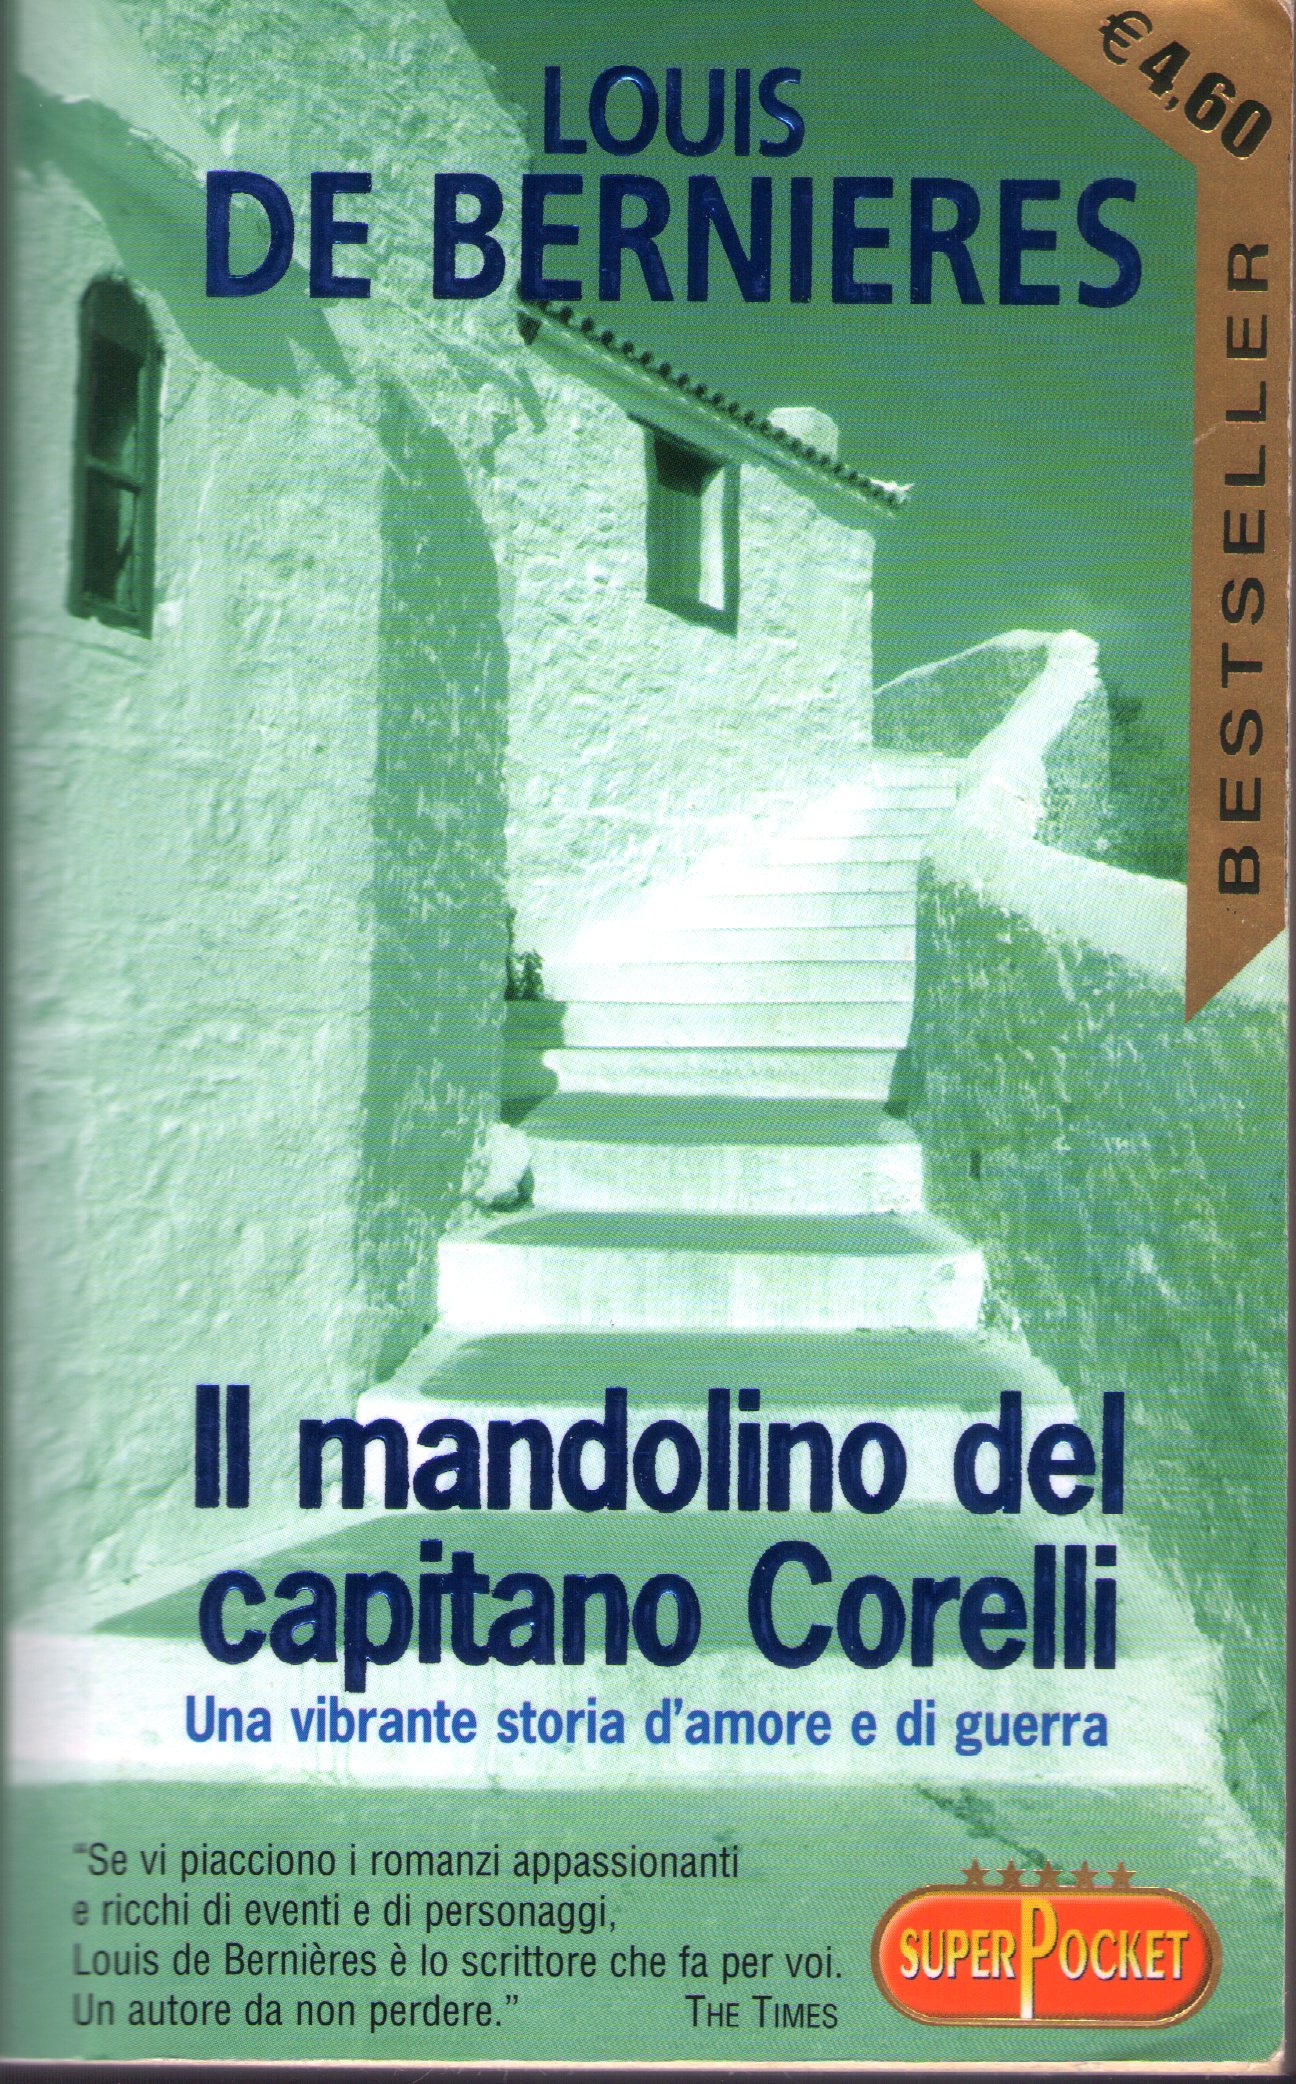 Il mandolino del capitano Corelli